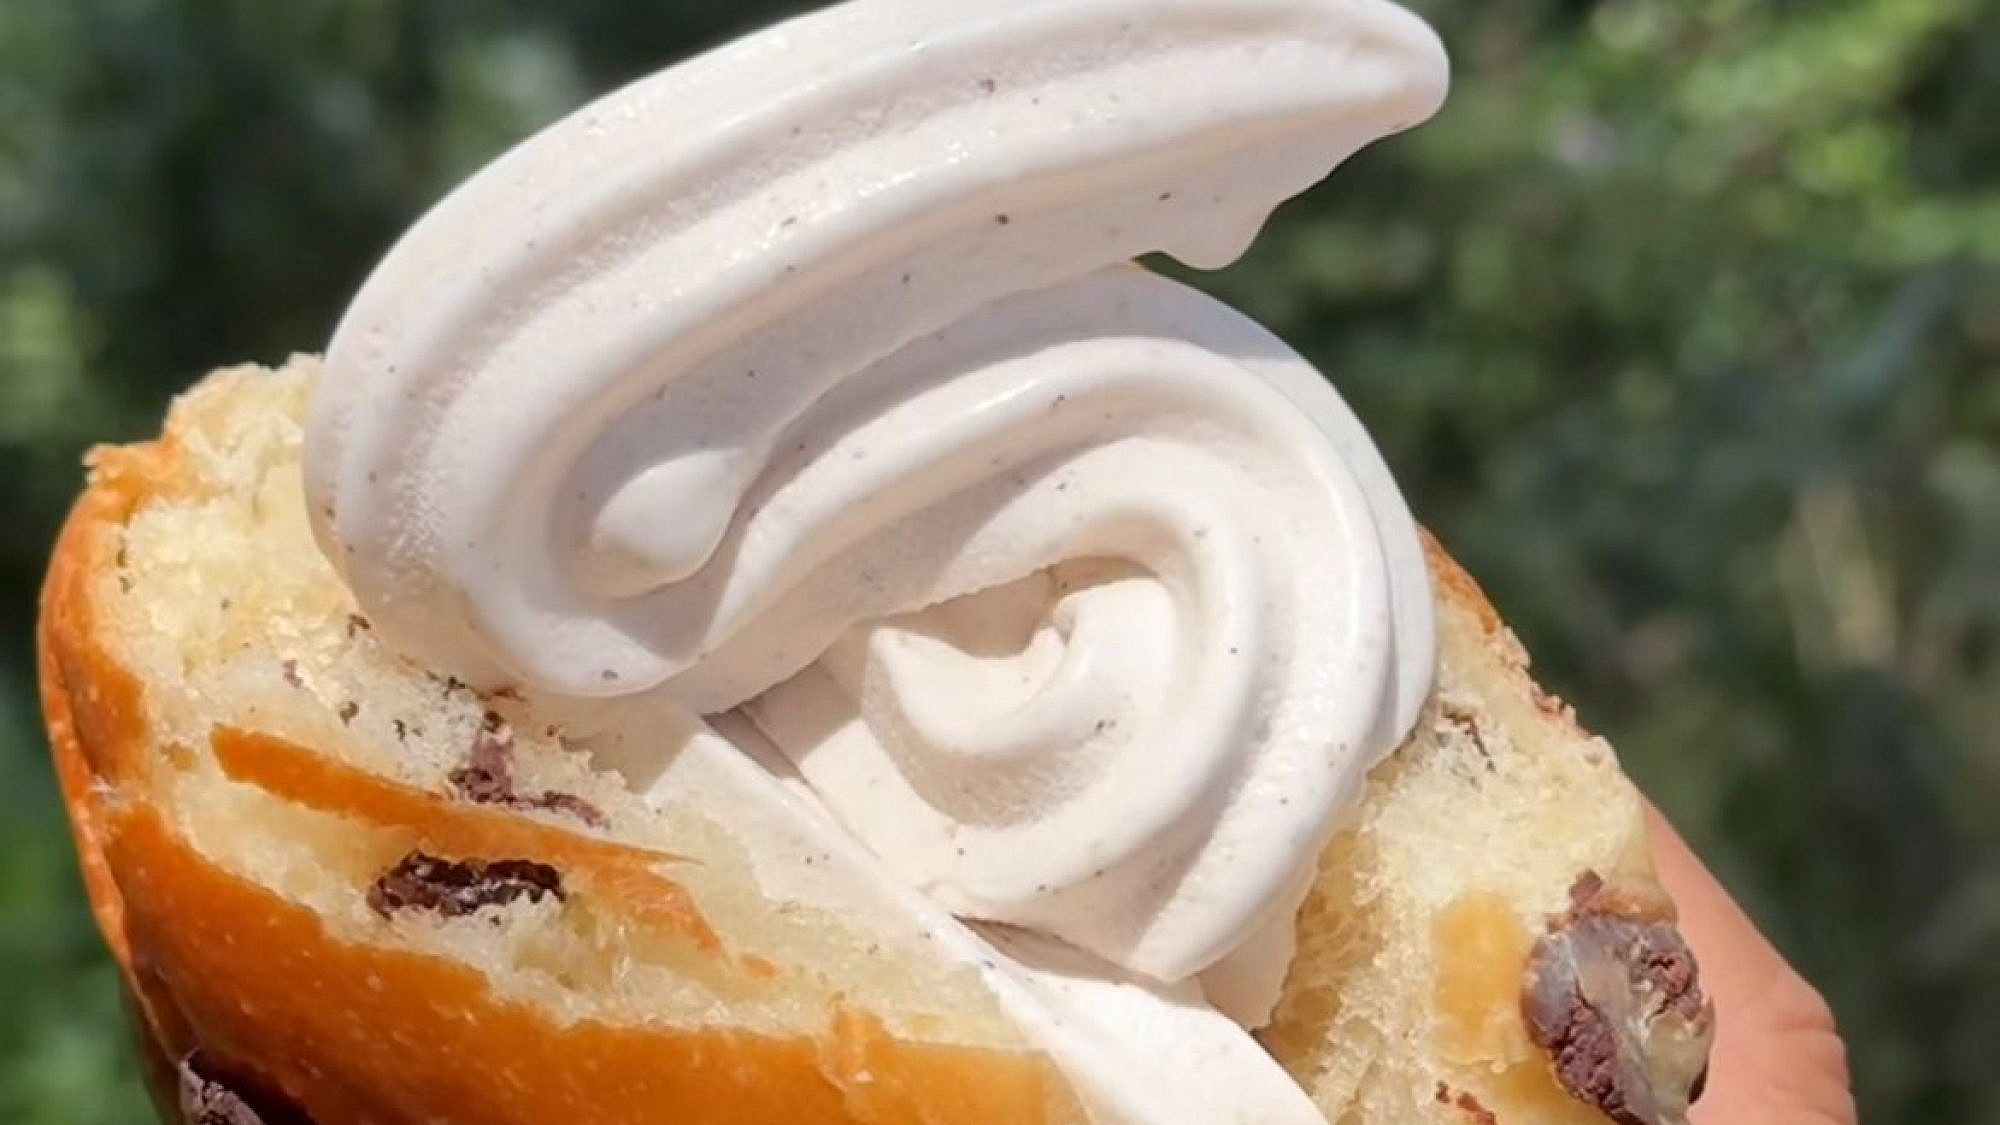 חתונה חלומית. גלידה של "אוטו גלידה", לחם בריוש של "חגי והלחם". צילום: סתיו כץ